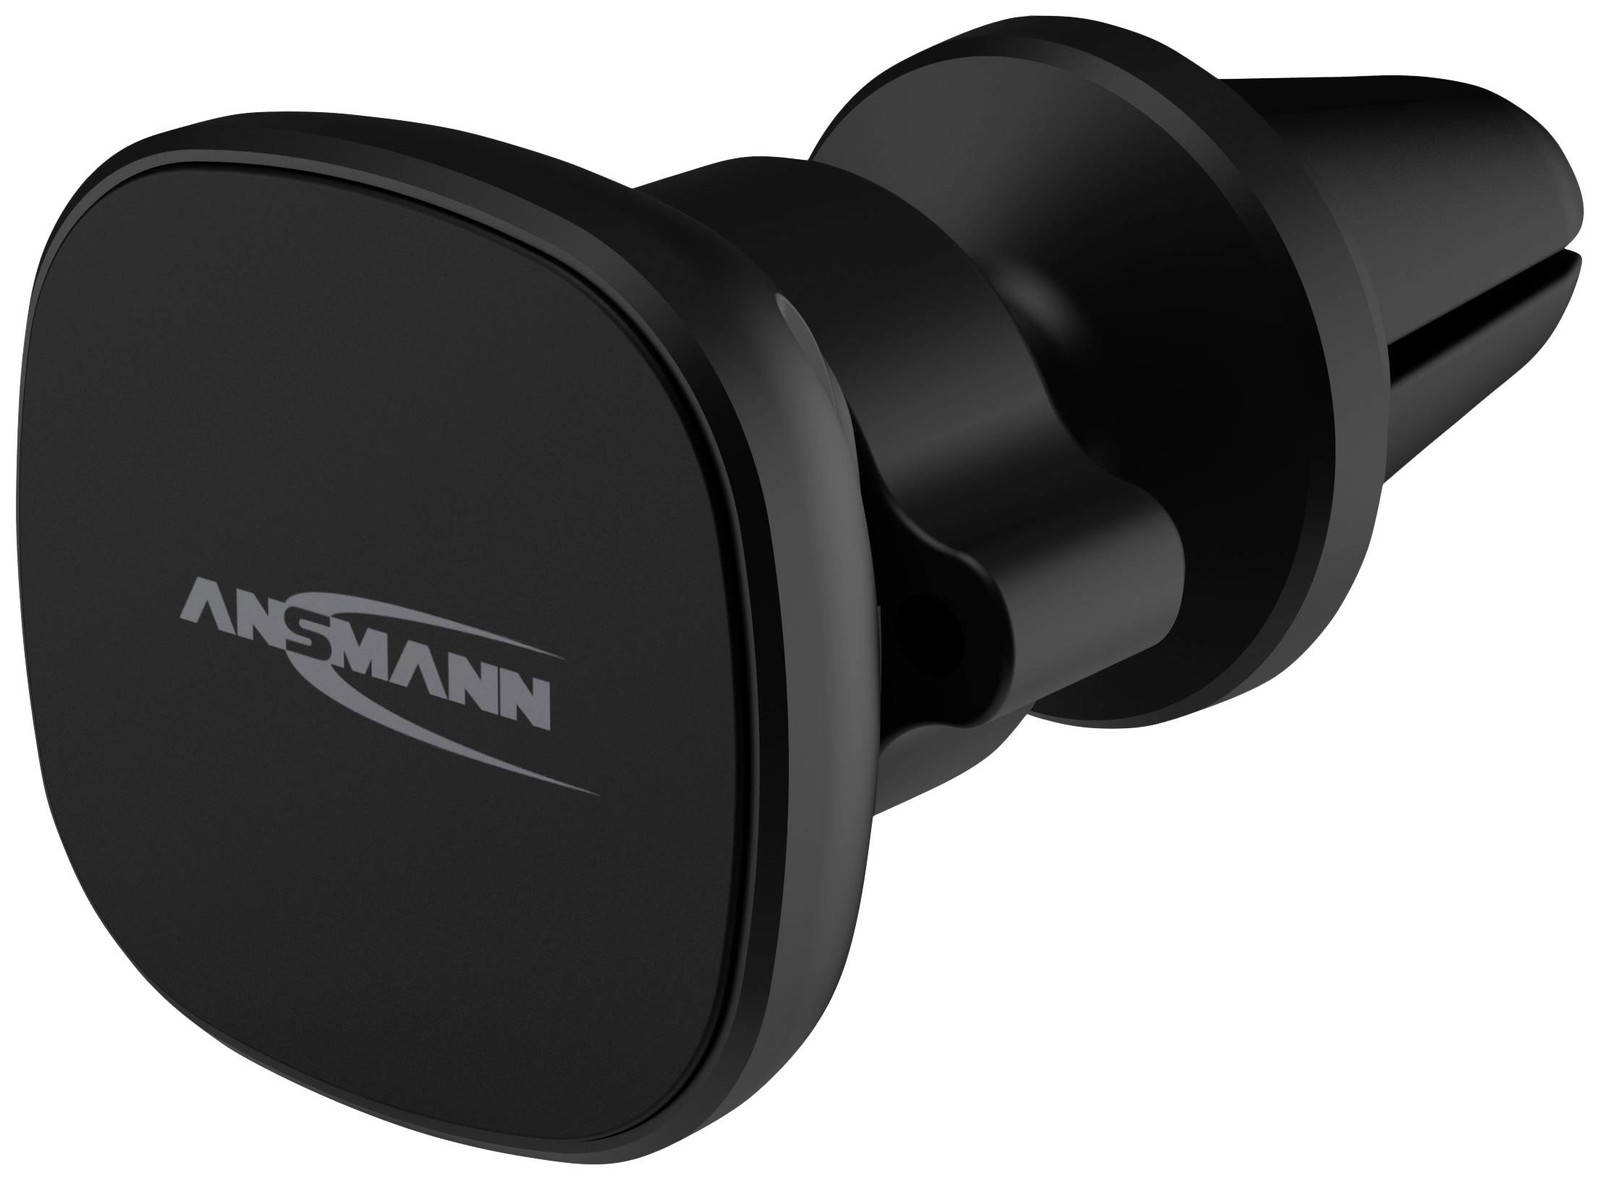 Ansmann Smart Lüftung upevnění na ventilační mřížku držák mobilního telefonu do auta s magnetickým upevněním 2 - 12 mm